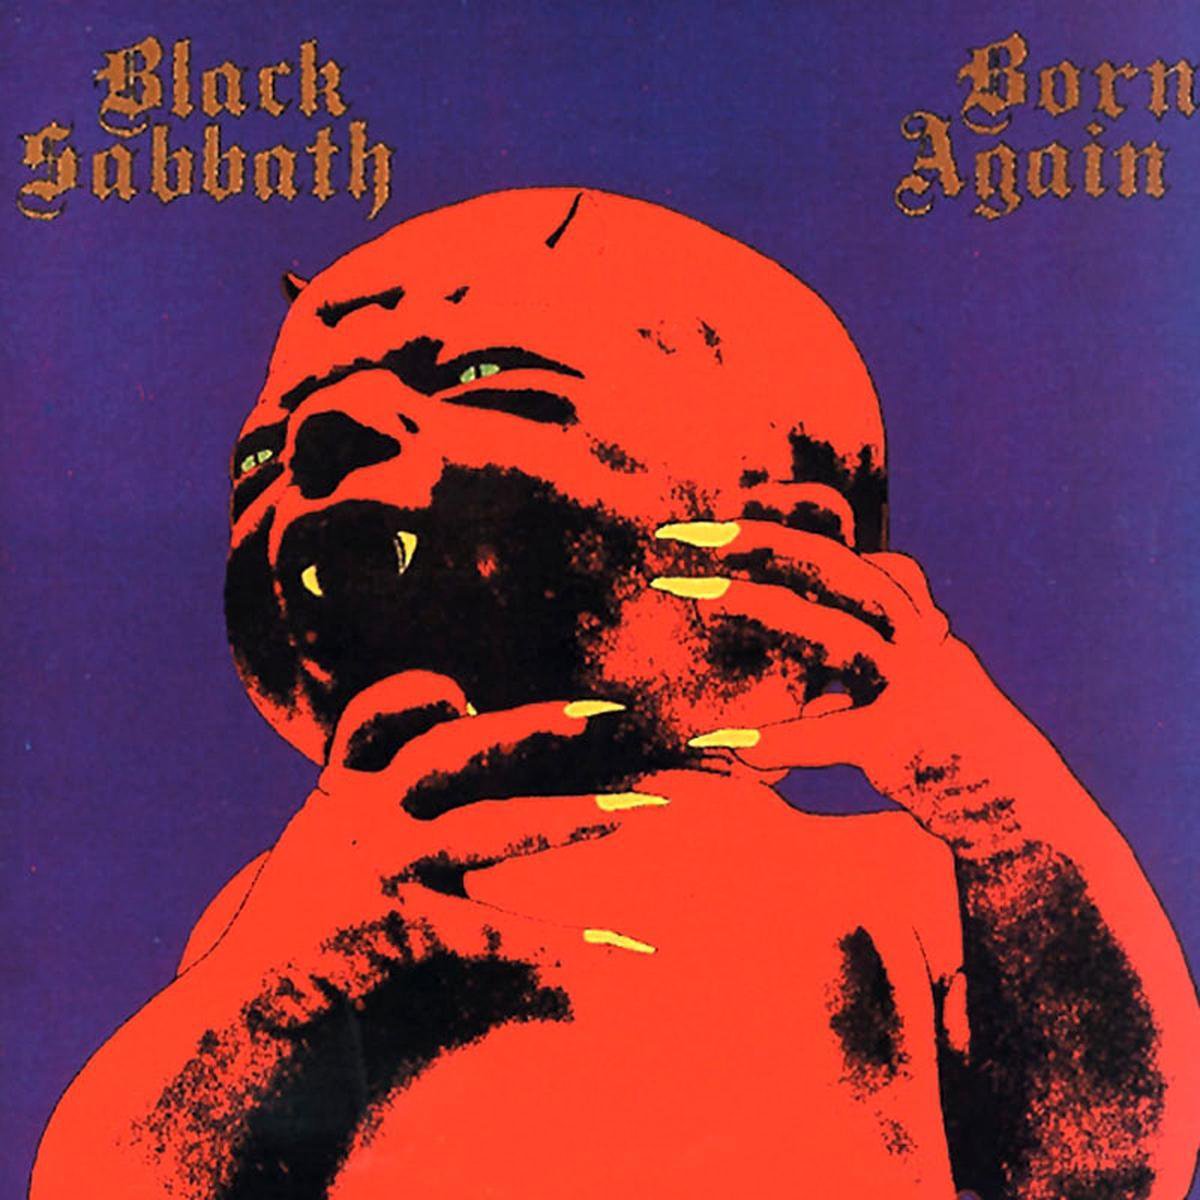 black sabbath born again logo